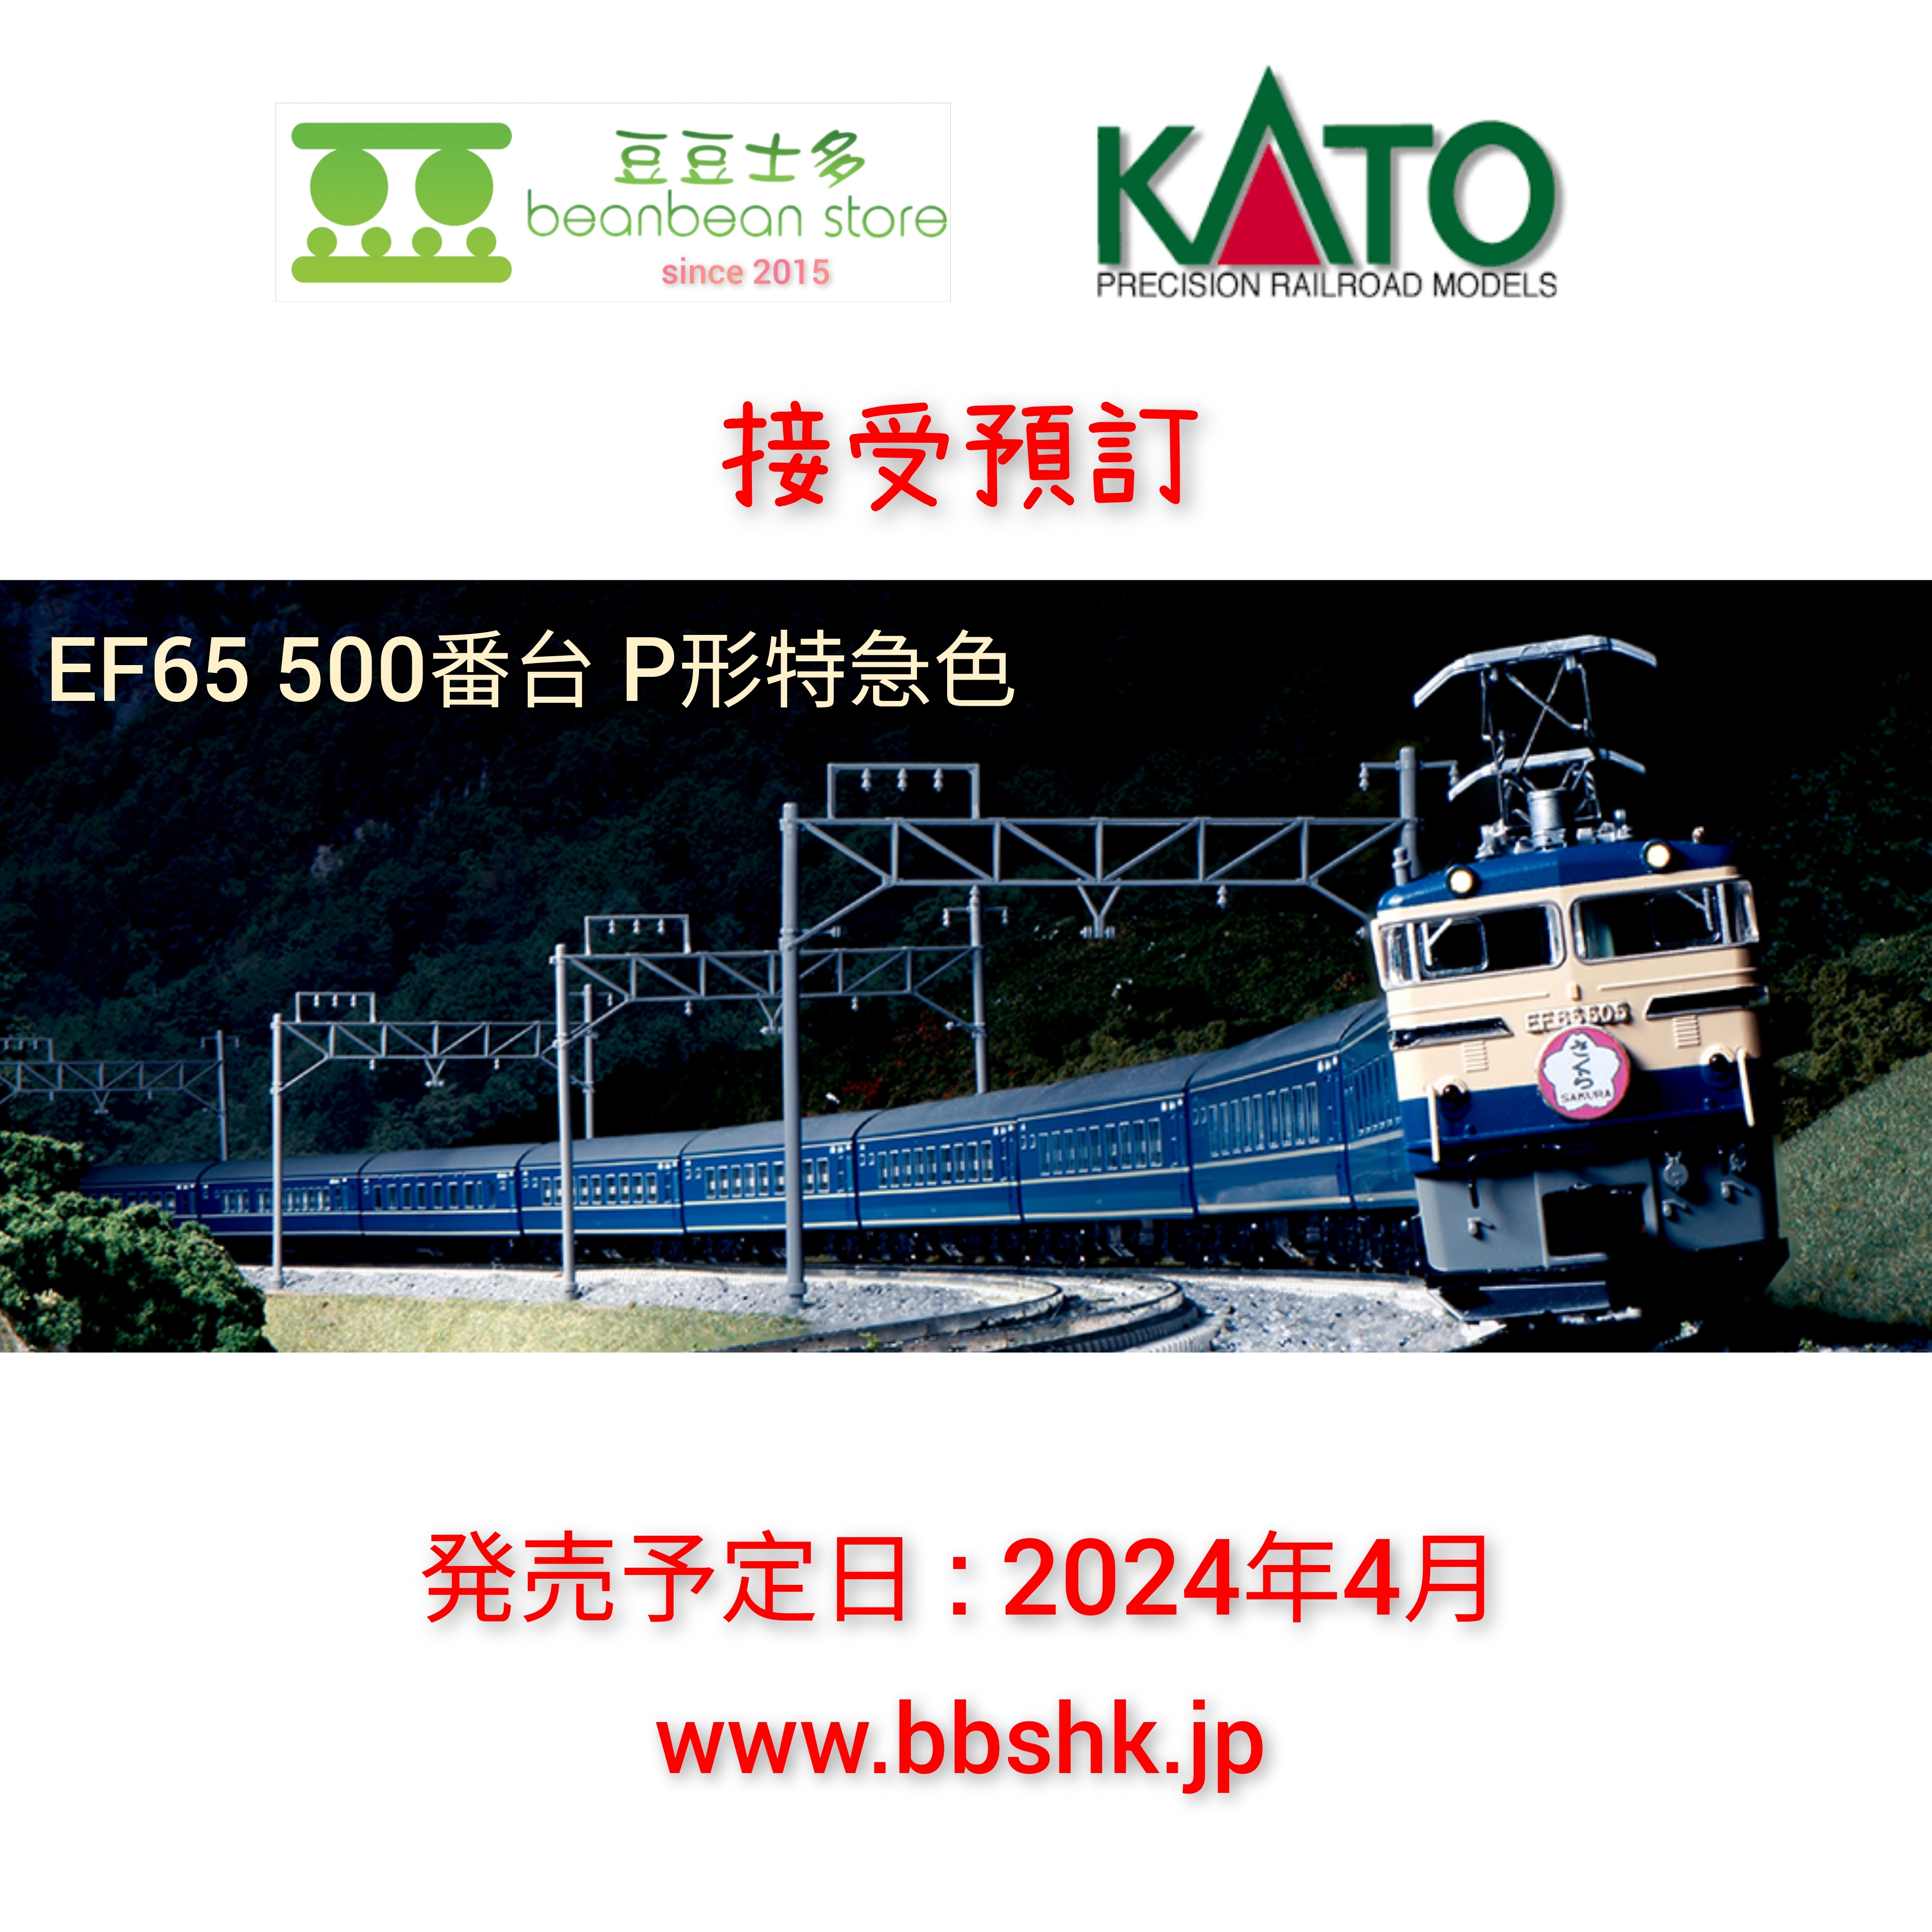 預訂> KATO 3060 EF65 500番台P形特急色